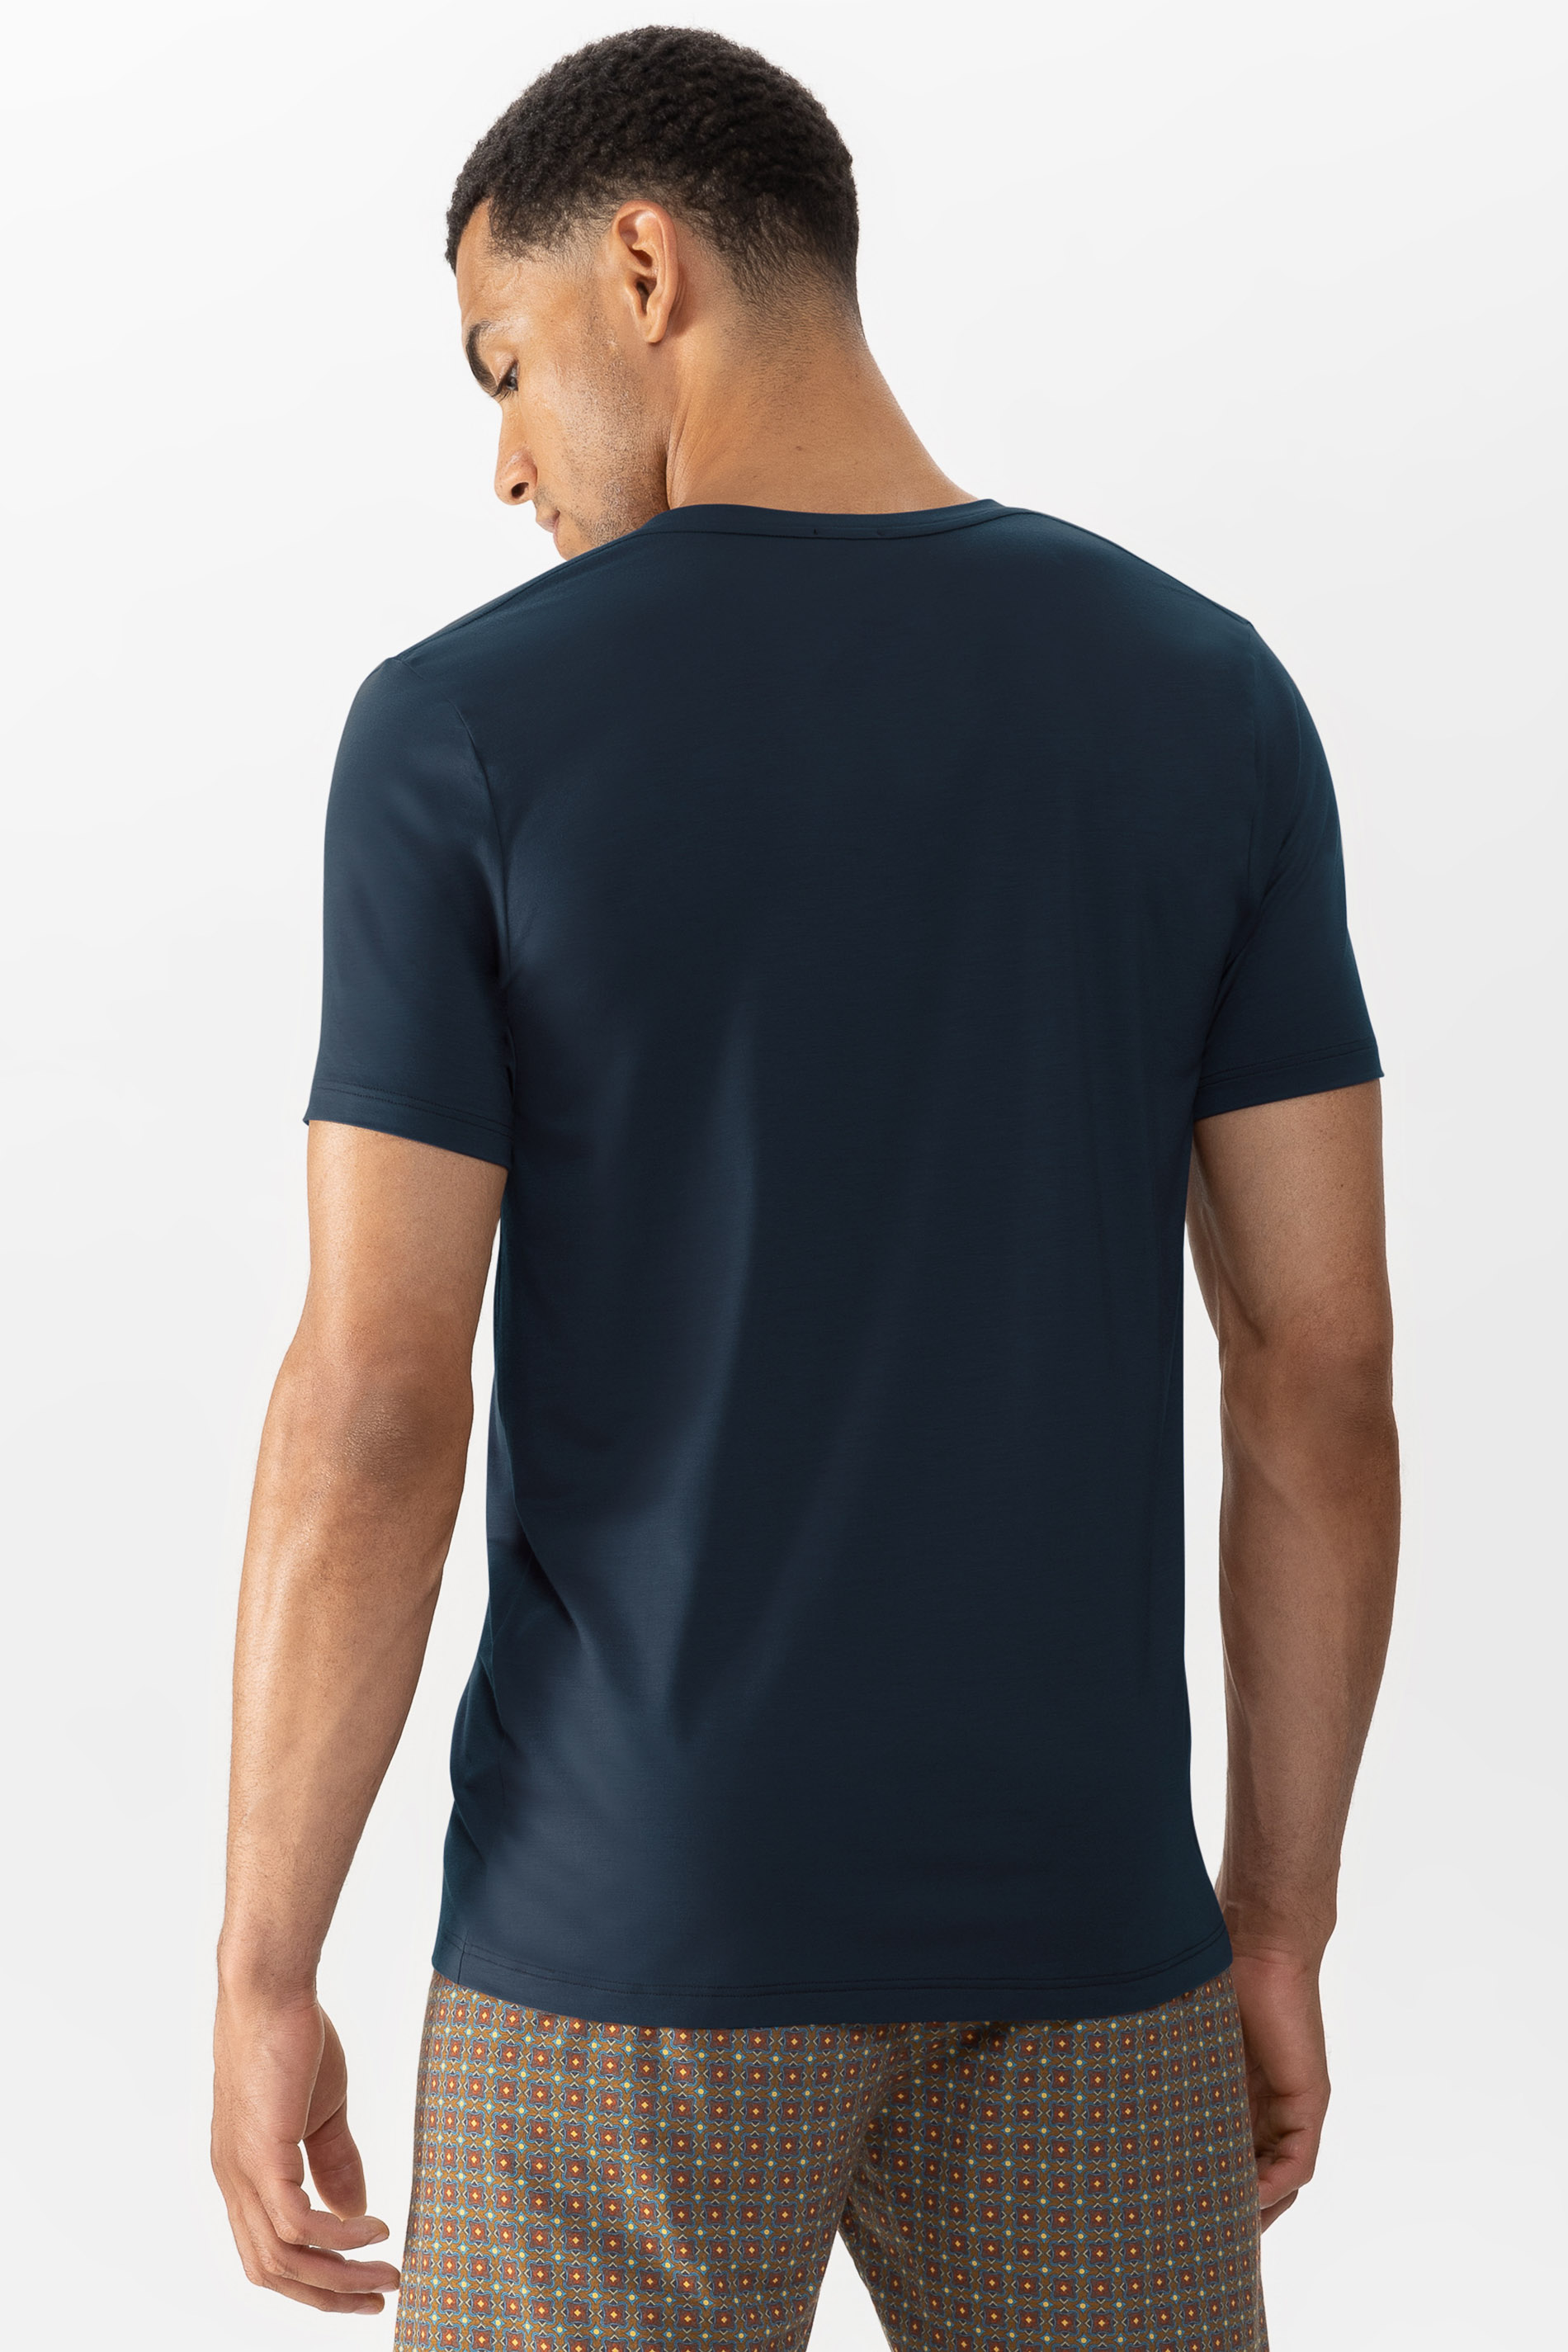 T-Shirt Serie Selection Rückansicht | mey®